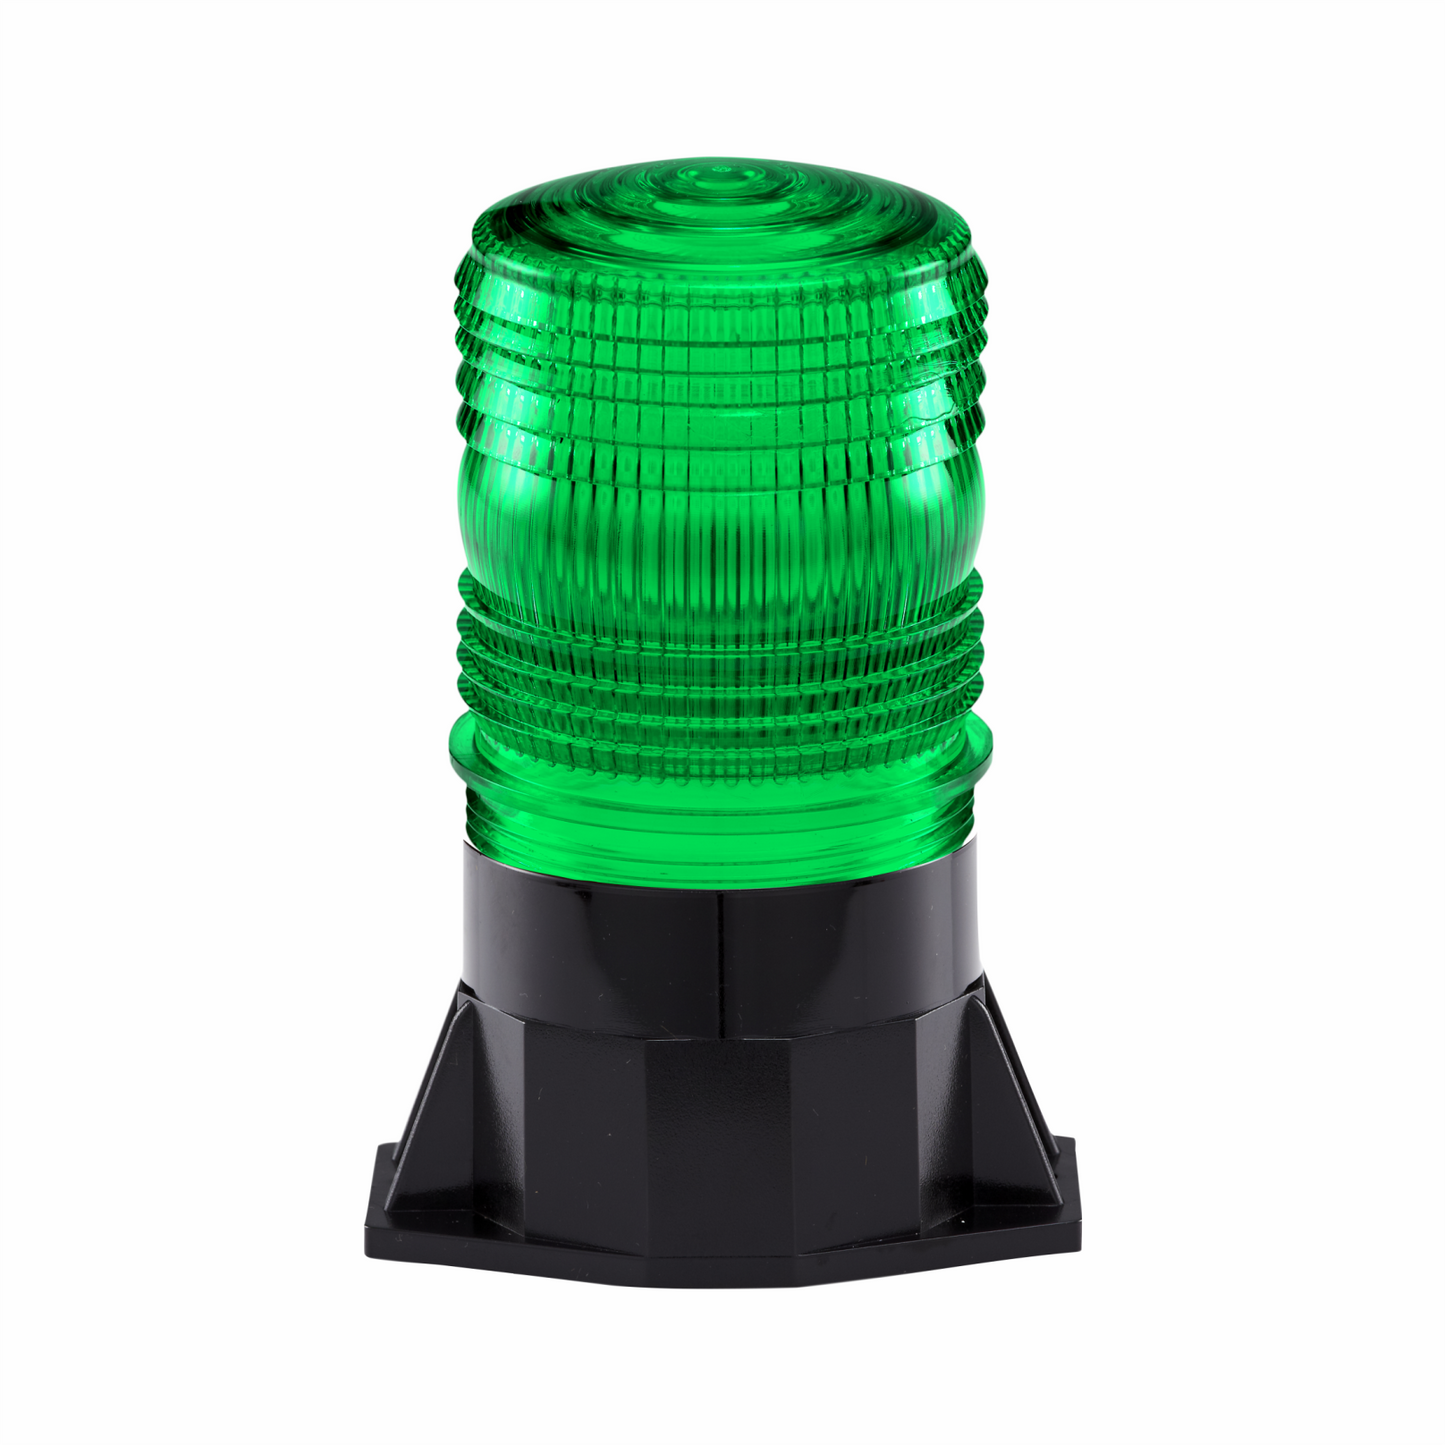 Green Tall LED Beacon